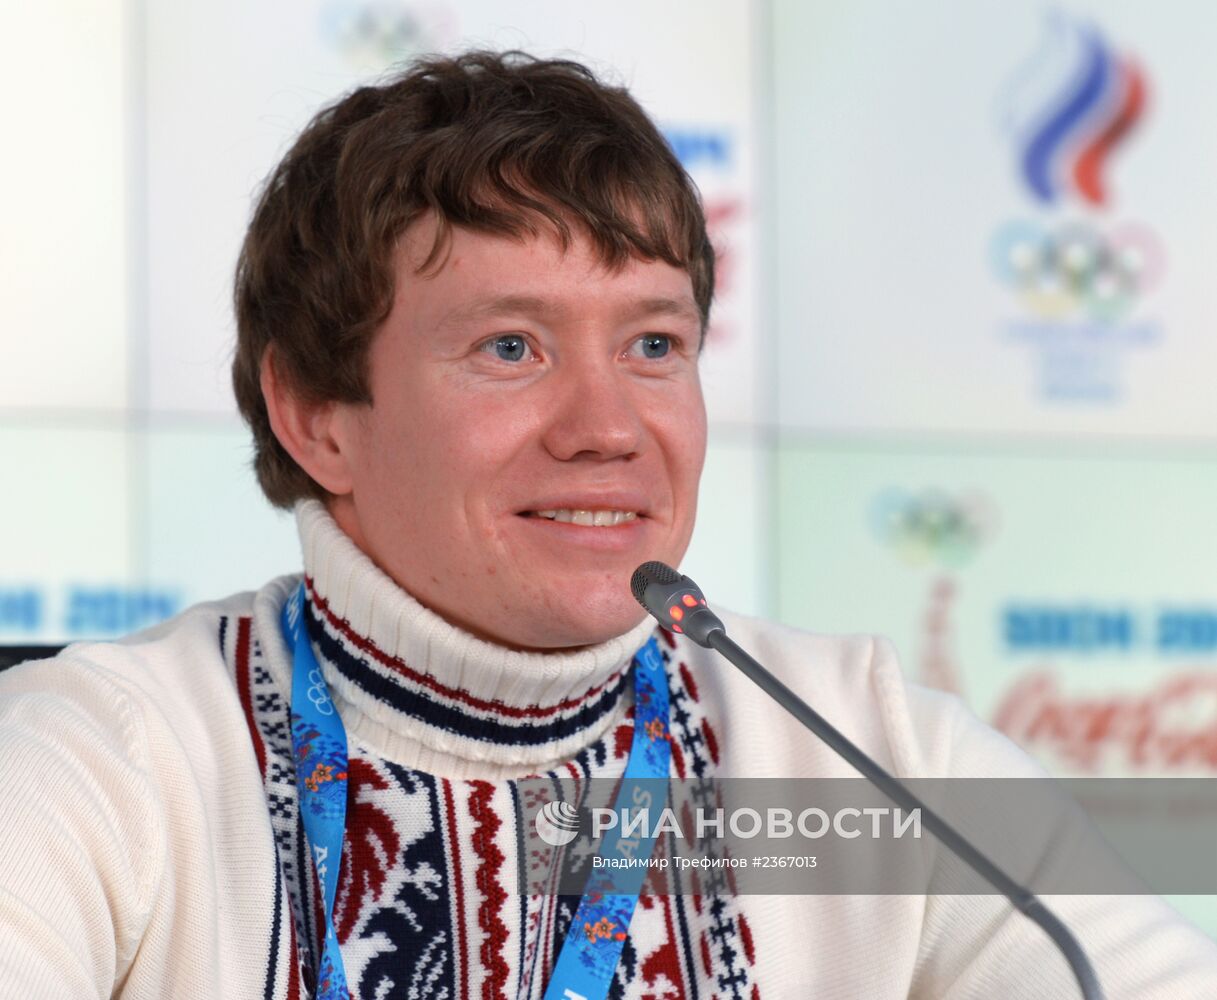 Пресс-конференция бронзового призера Олимпийских Игр 2014 Александра Смышляева